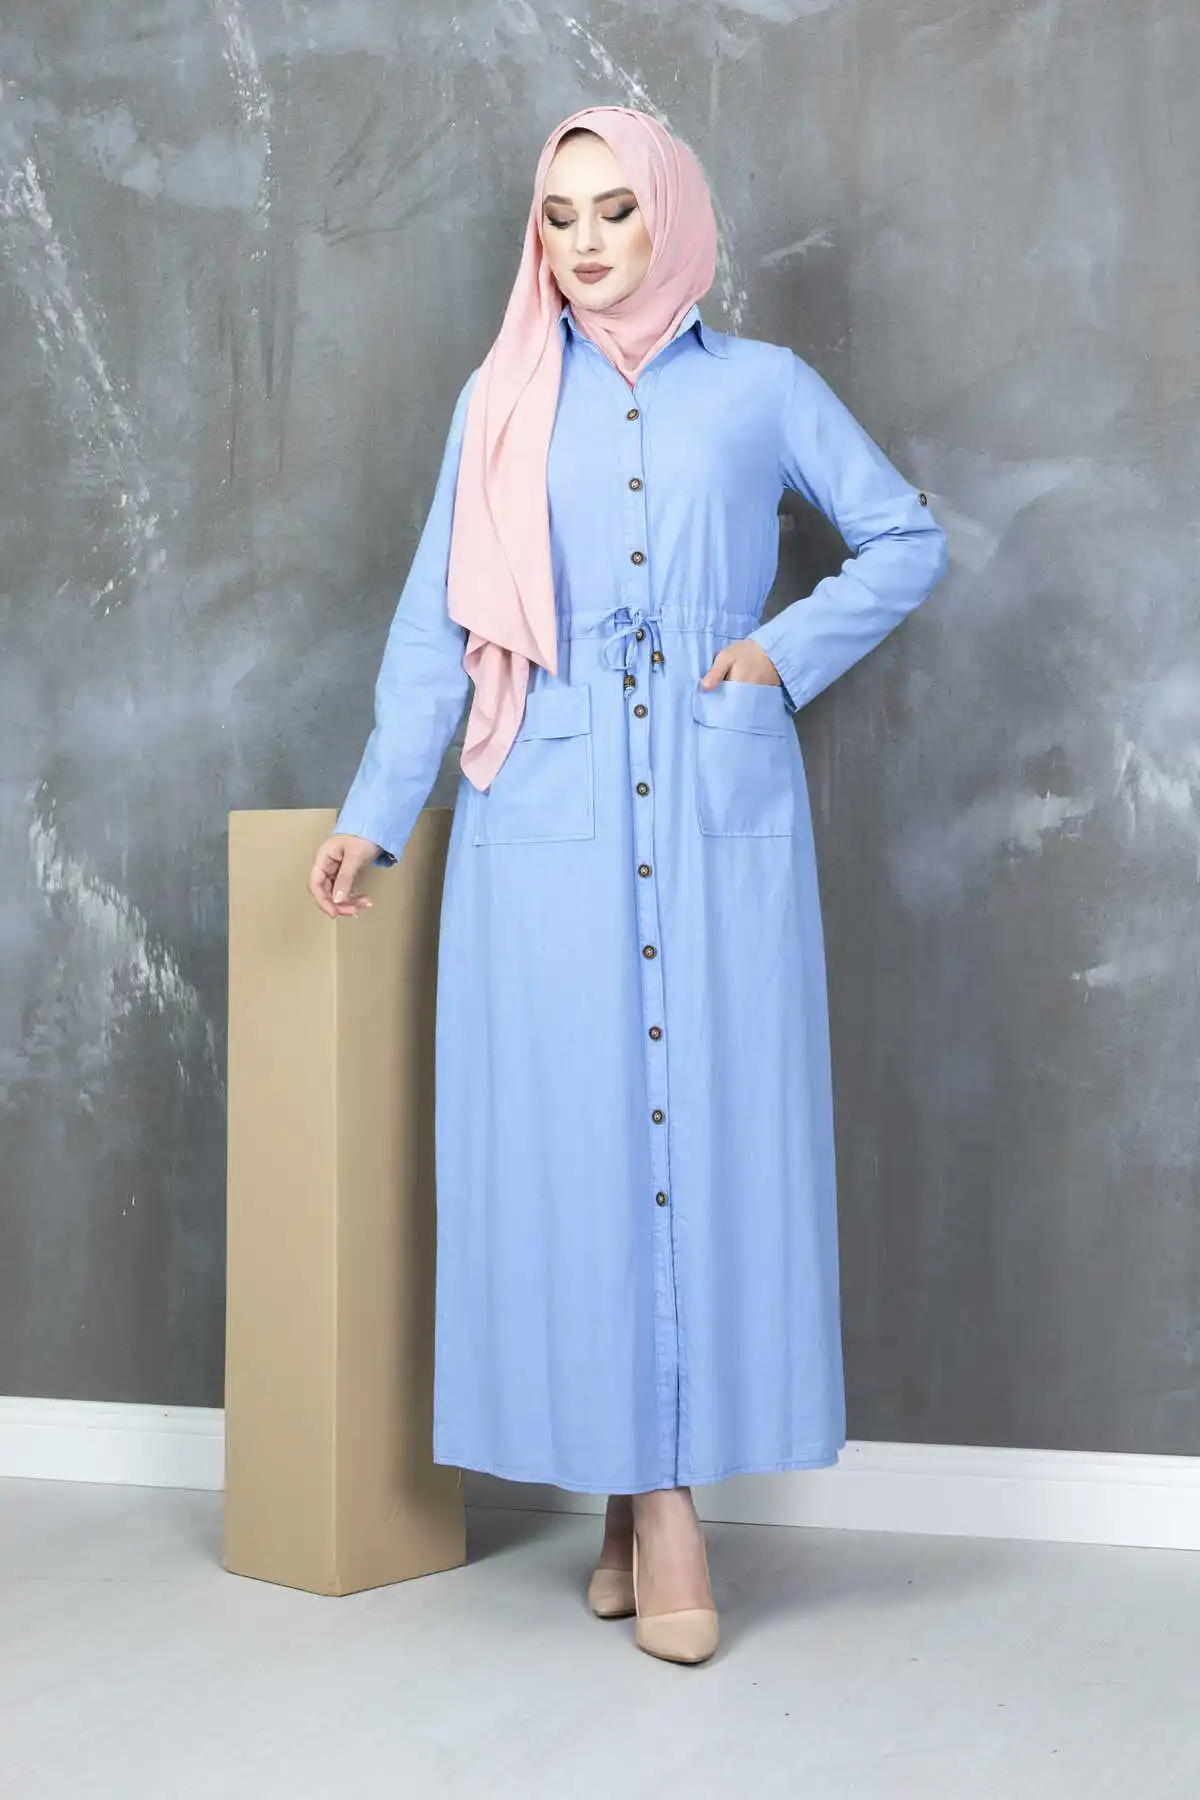 Женское платье-туннель с поясом, мусульманское кимоно из Дубая, марокканская хиджаб, кафтан, мусульманская одежда Женское платье с поясом д...